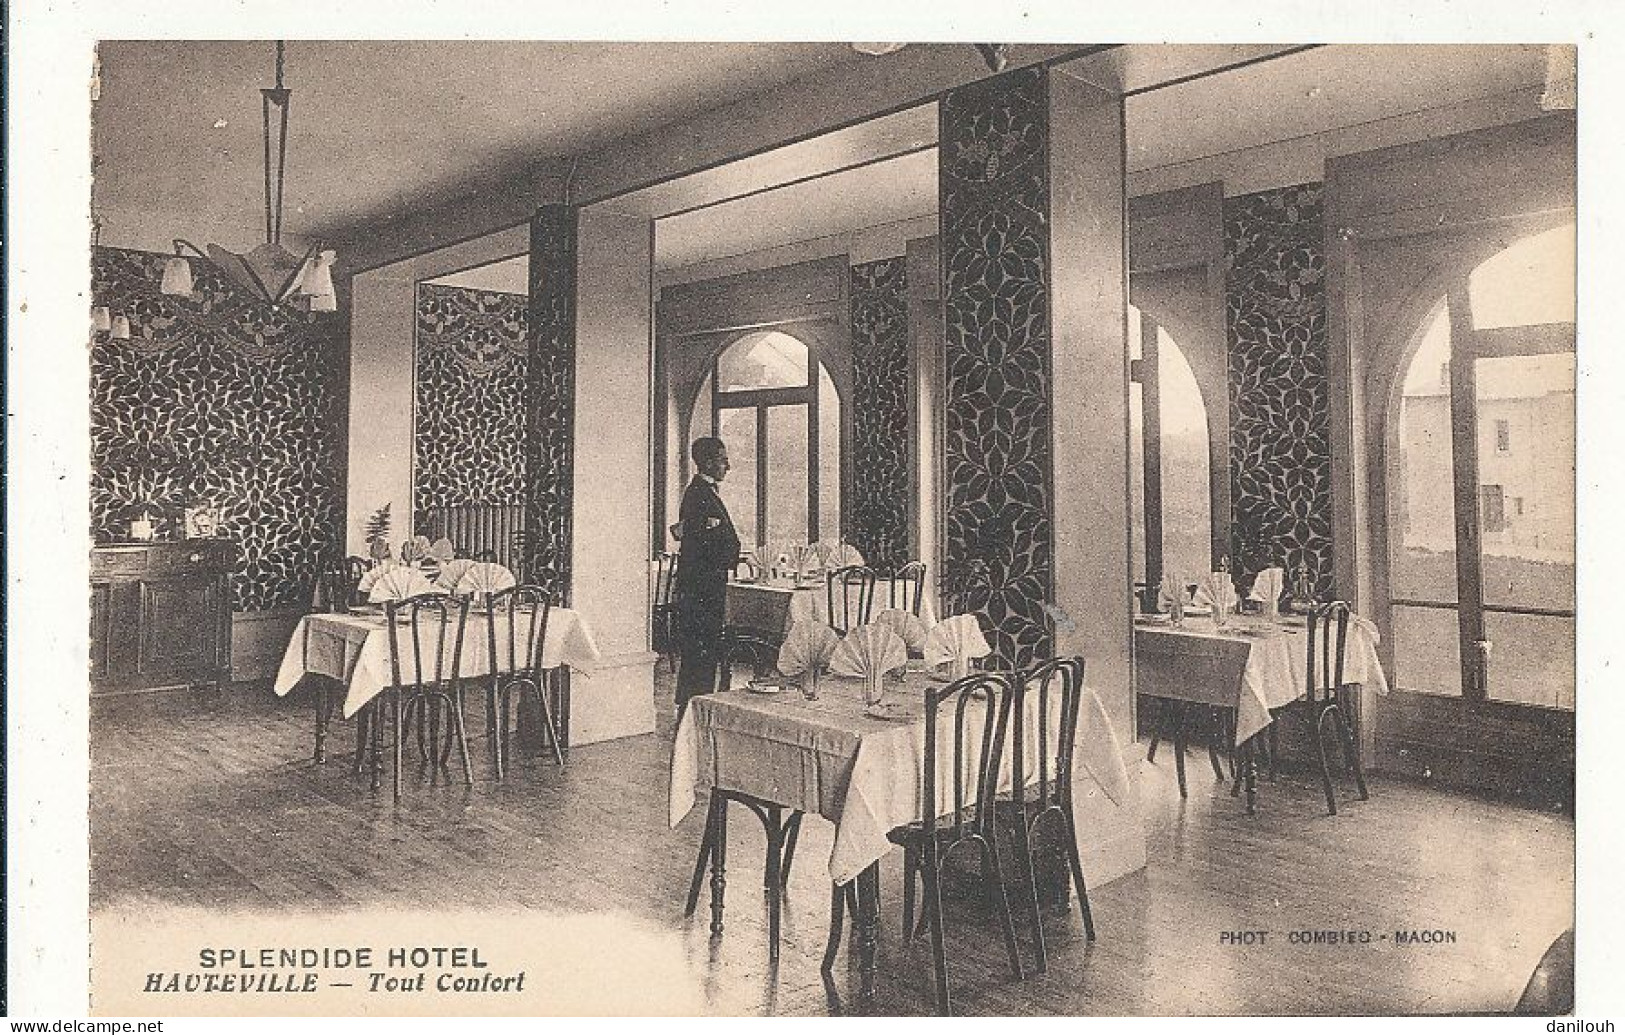 01 // HAUTEVILLE   SPLENDIDE SPLENDID HOTEL - E BREVET Propriétaire - SALLE A MANGER - Restaurant - Hauteville-Lompnes